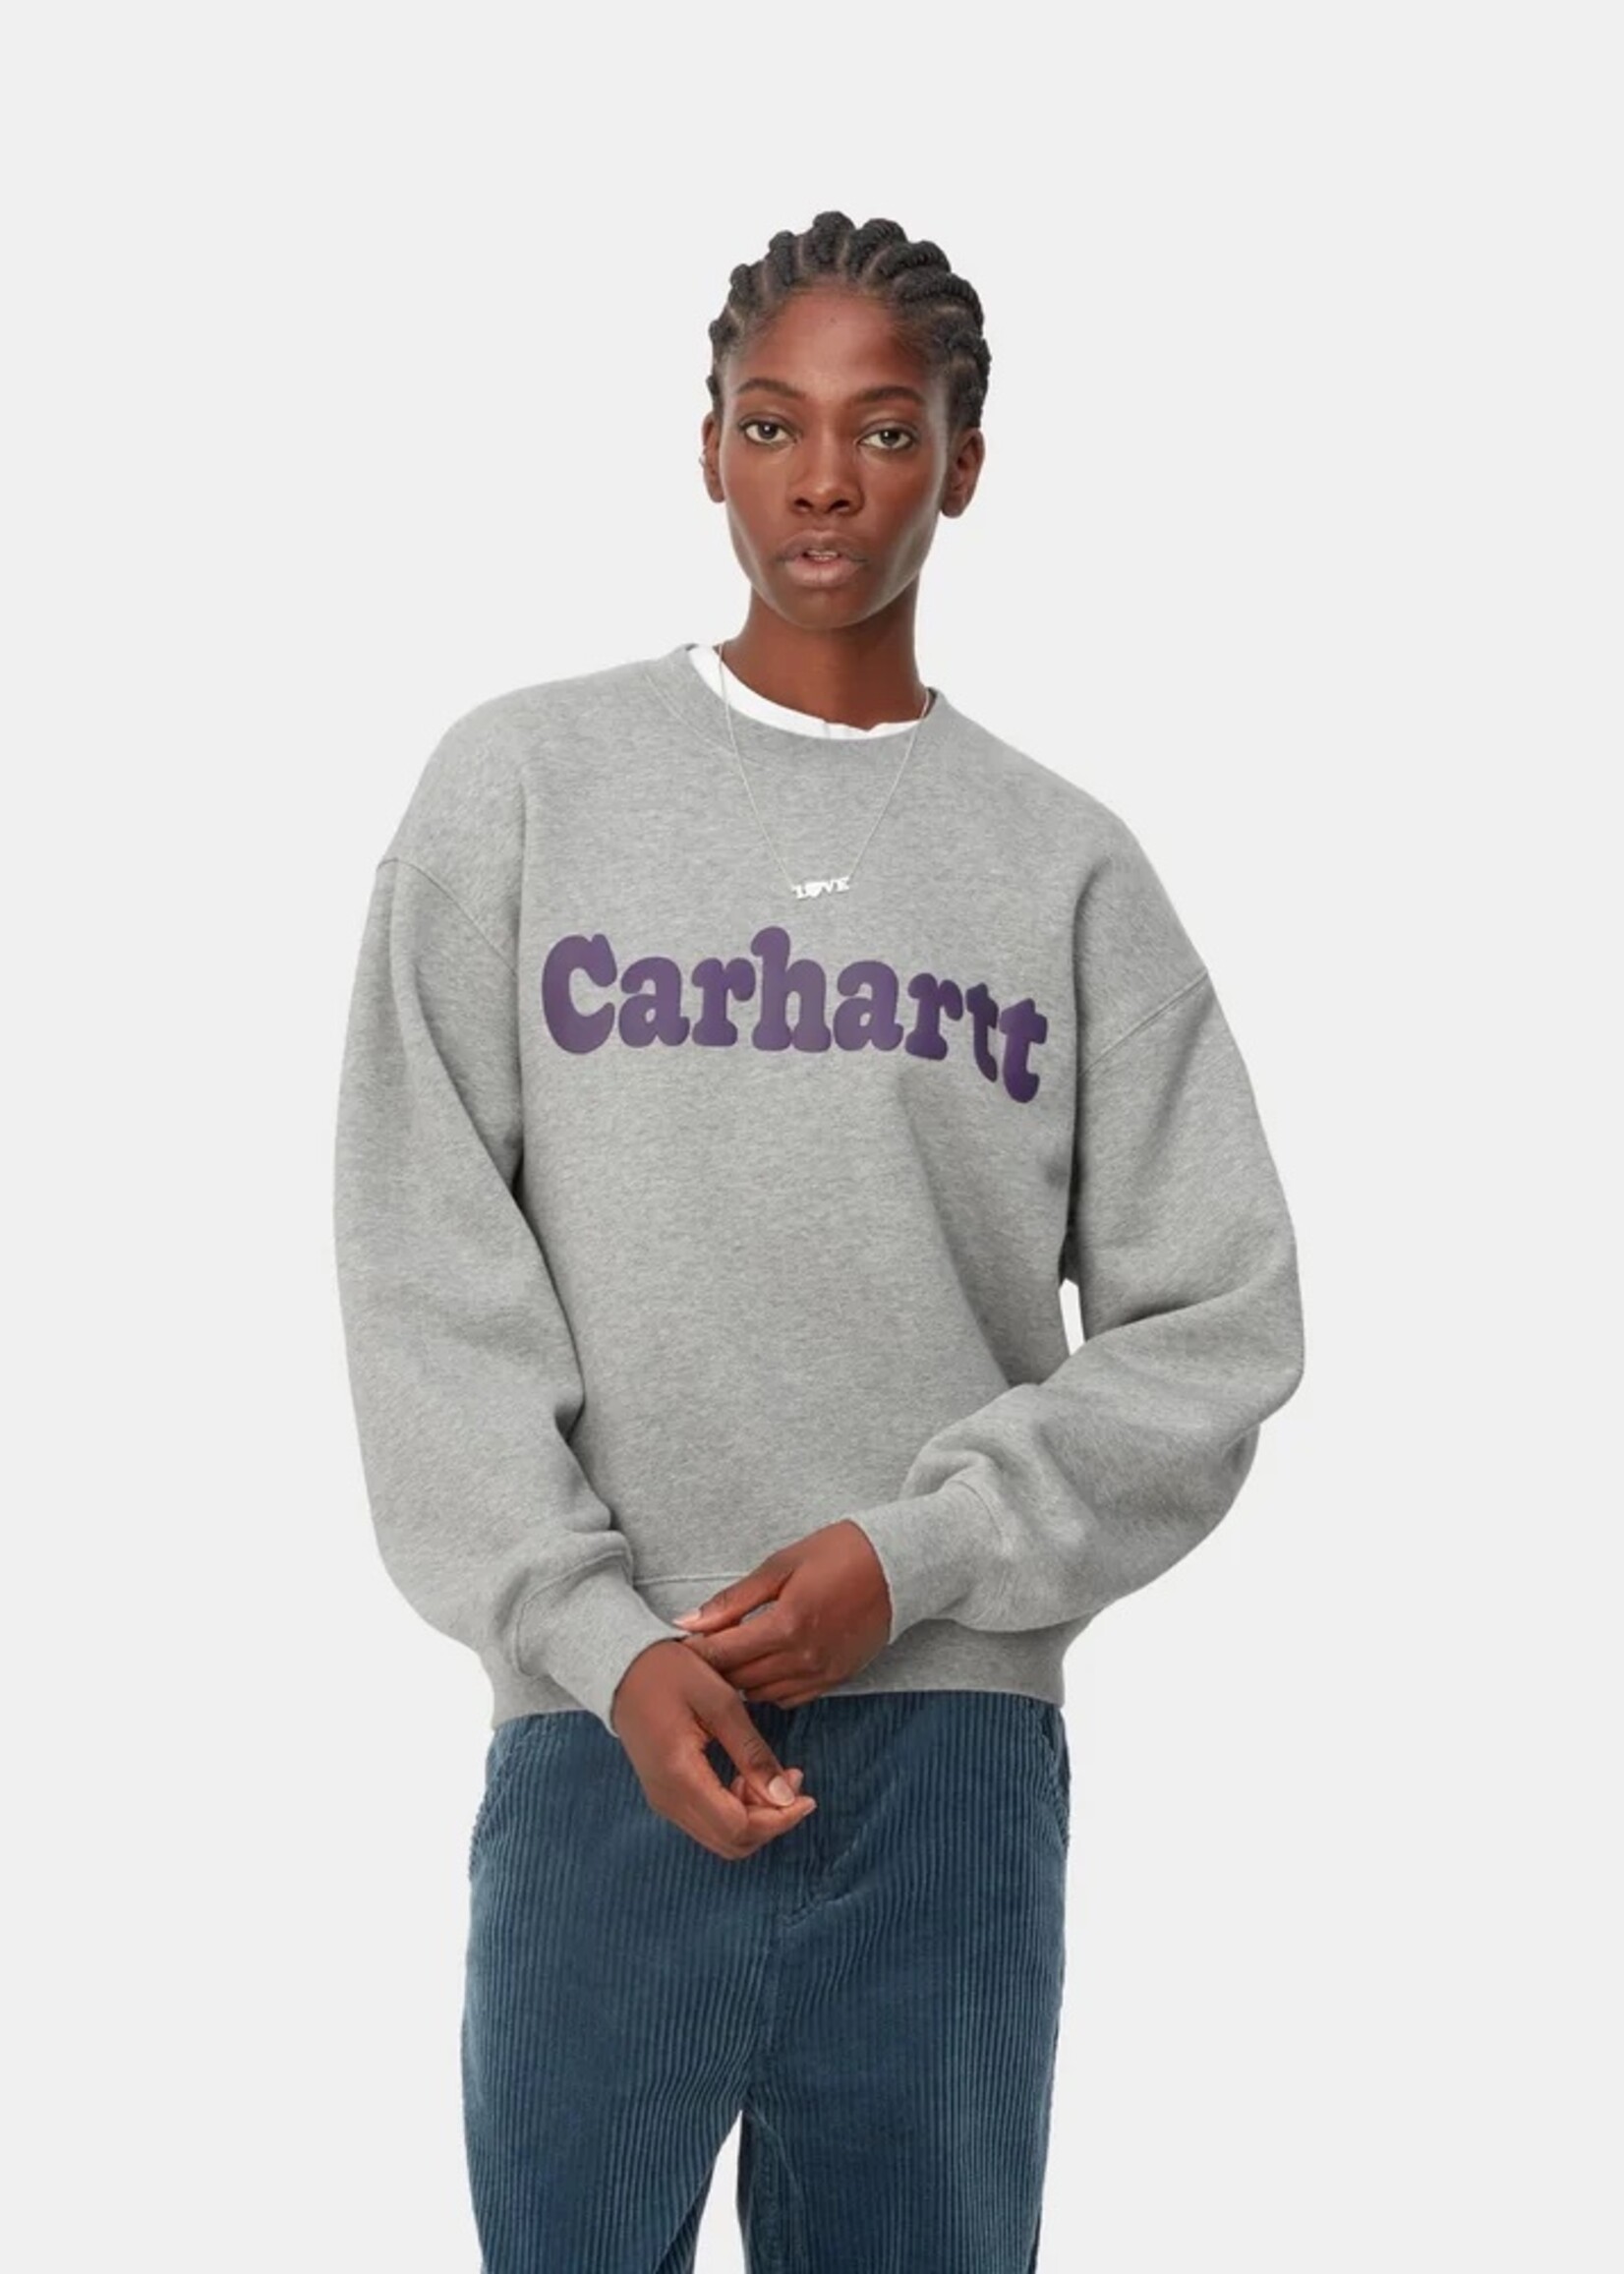 Carhartt Work In Progress Women's Bubbles Sweatshirt in Heather Grey